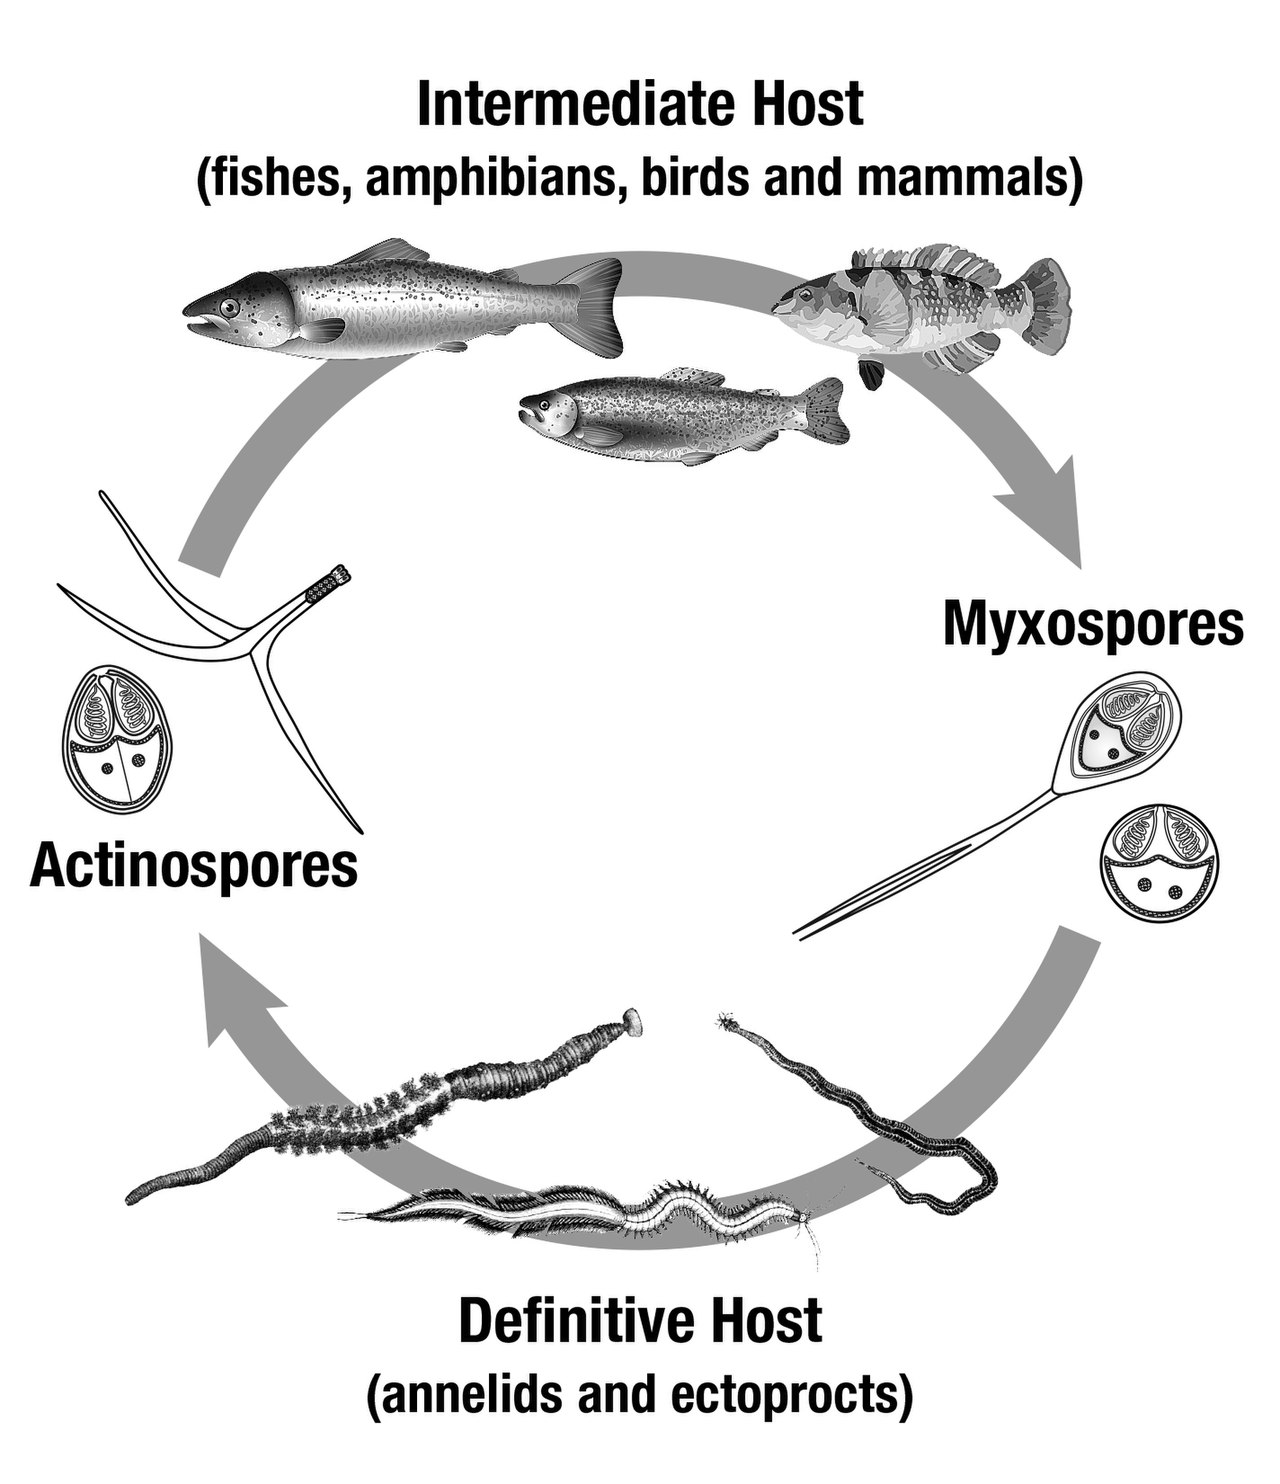 تتشابه دورة حياة الزواحف ودورة حياة البرمائيات